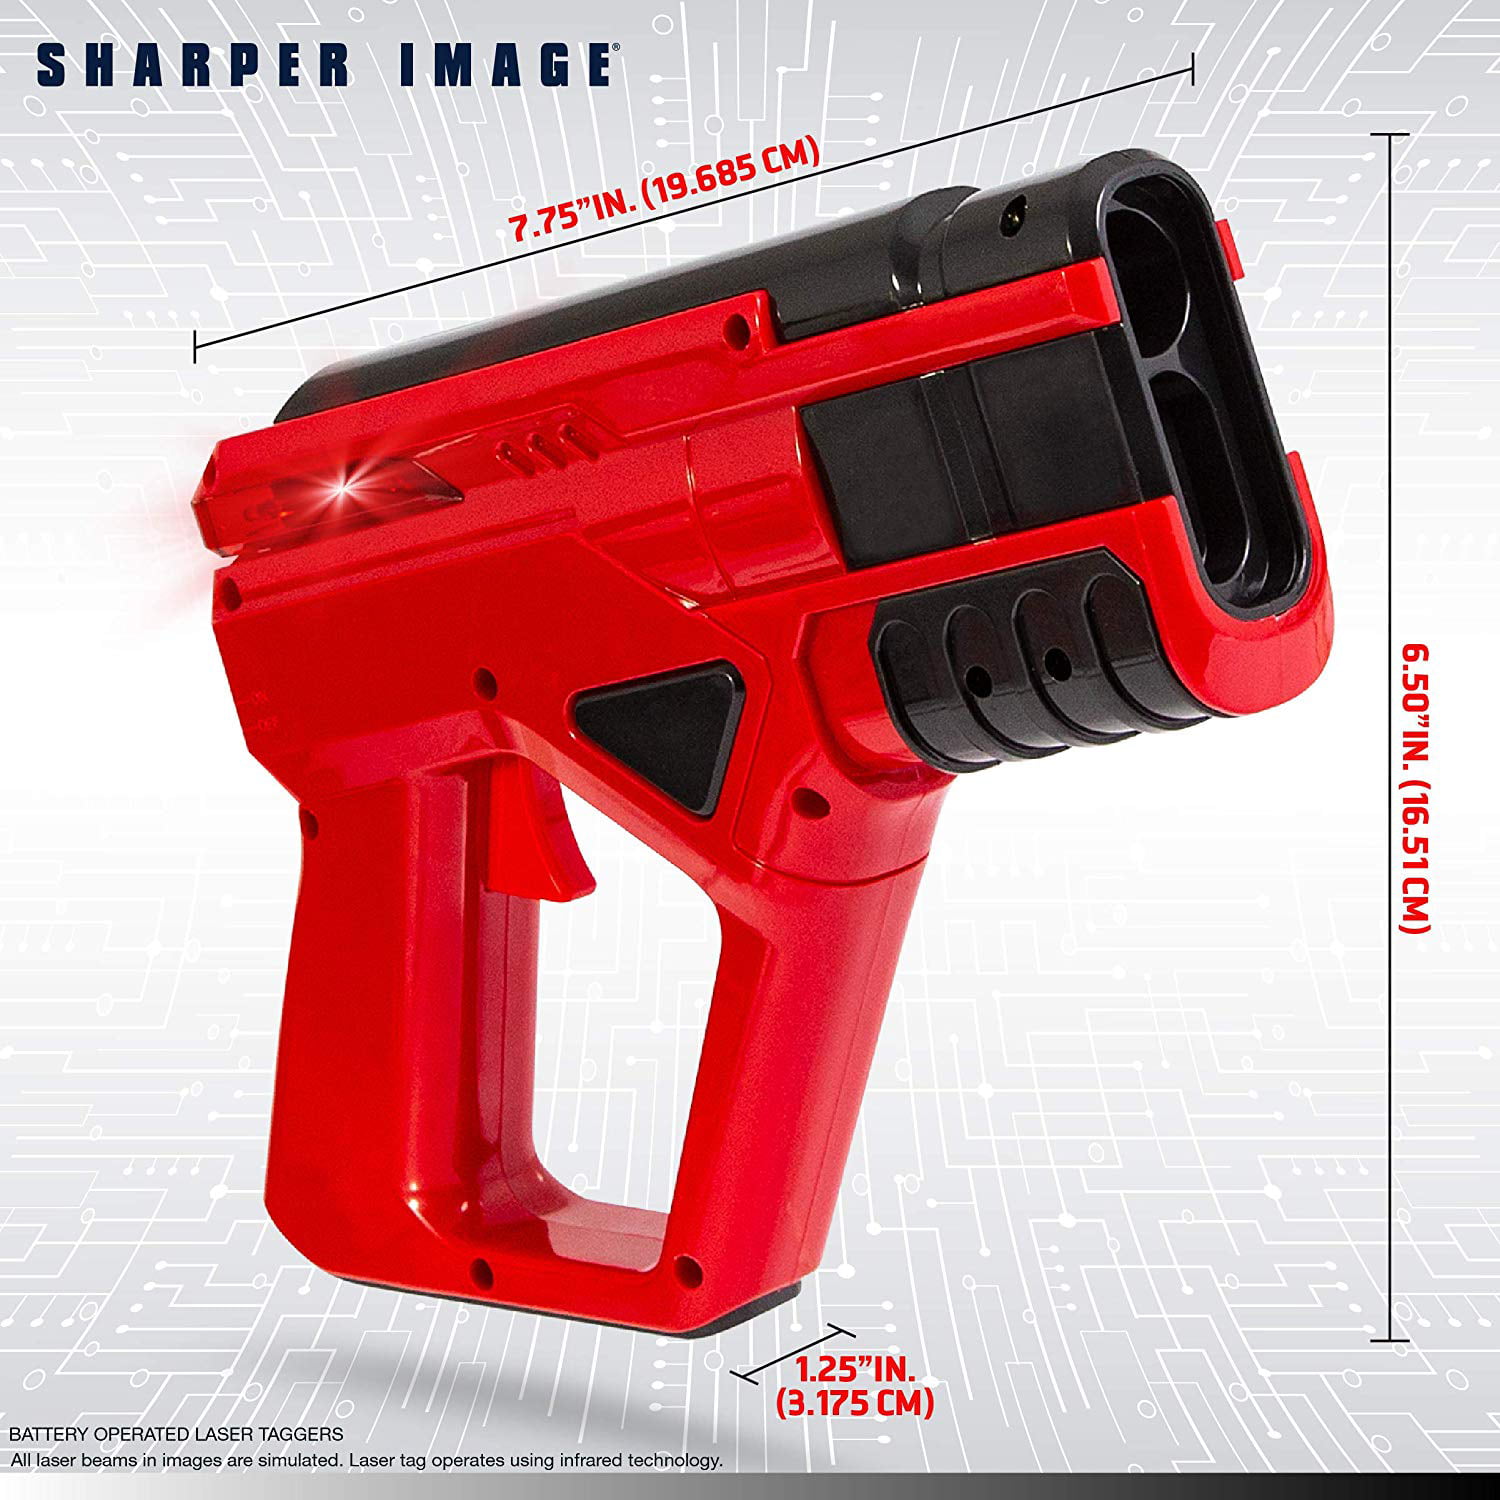 sharper image laser tag problems